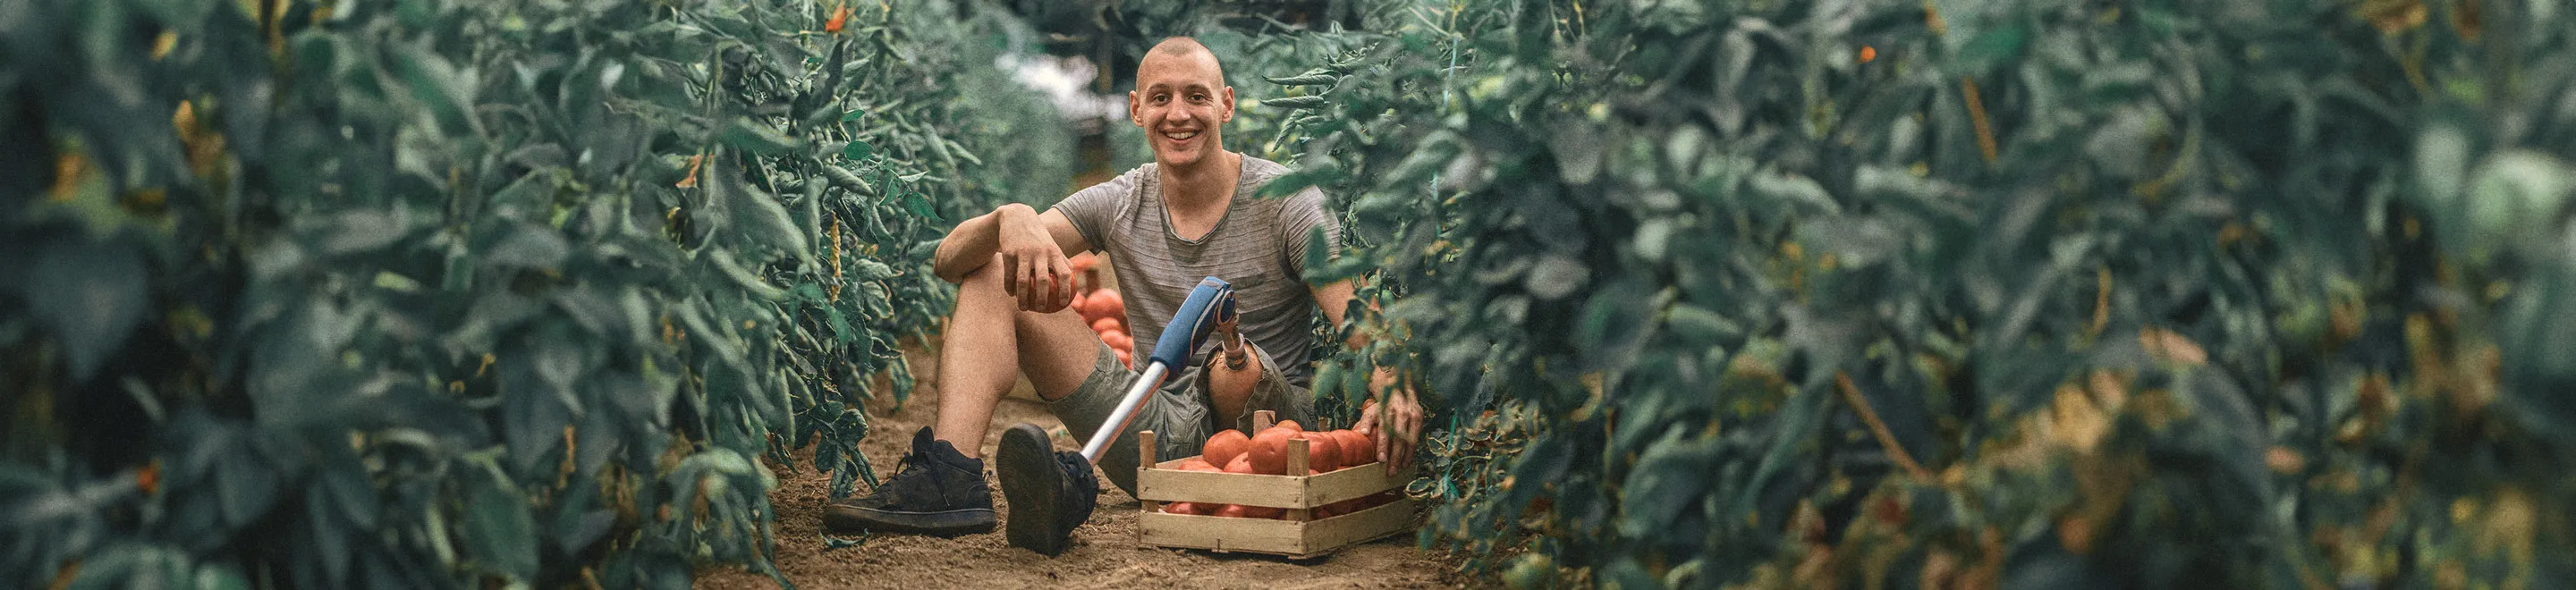 Ein junger Mann mit einer Beinprothese bei der Tomatenernte.